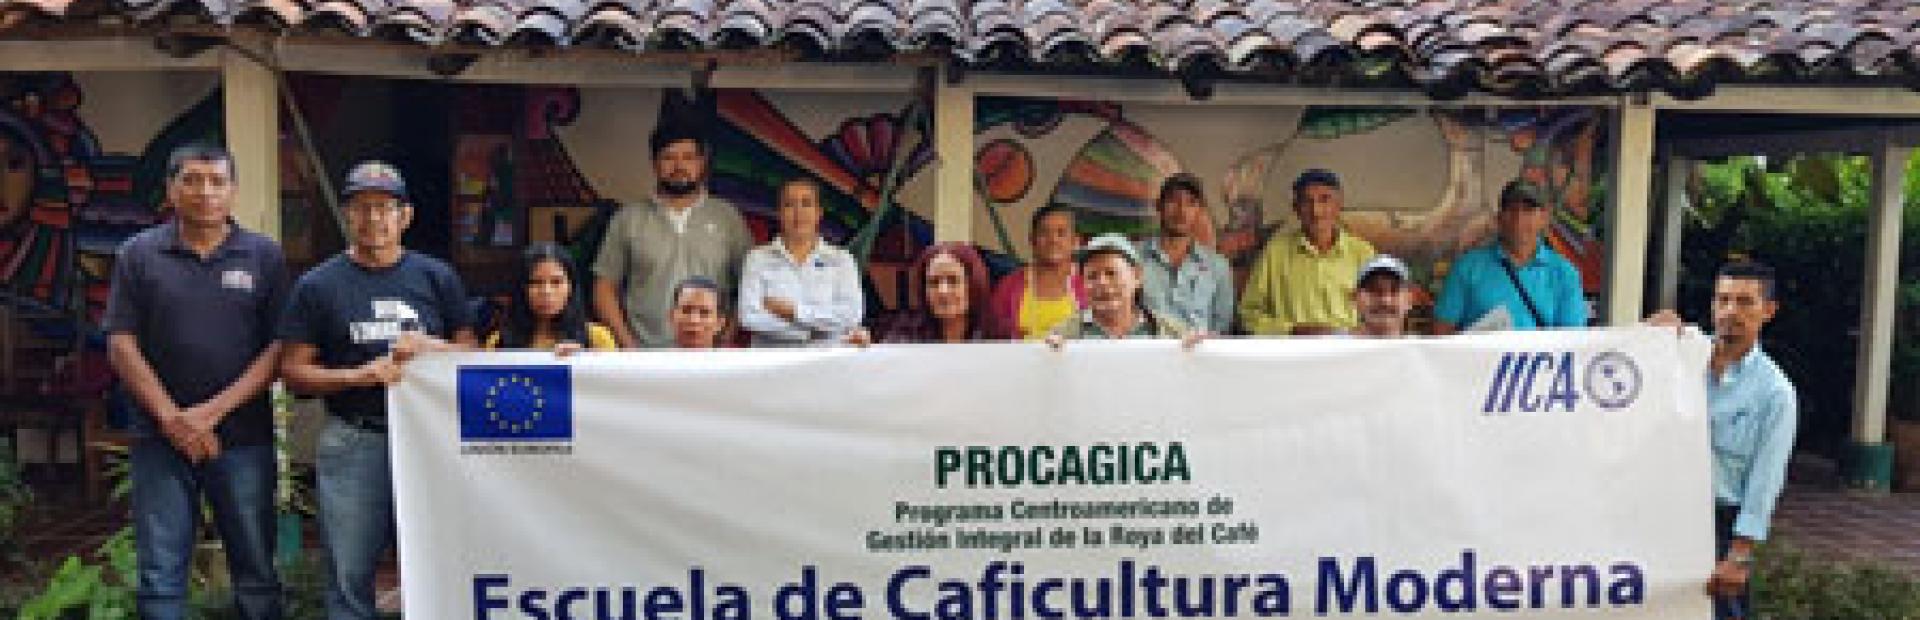 Escuela de Caficultura Moderna en Usulatán y San Miguel, El Salvador